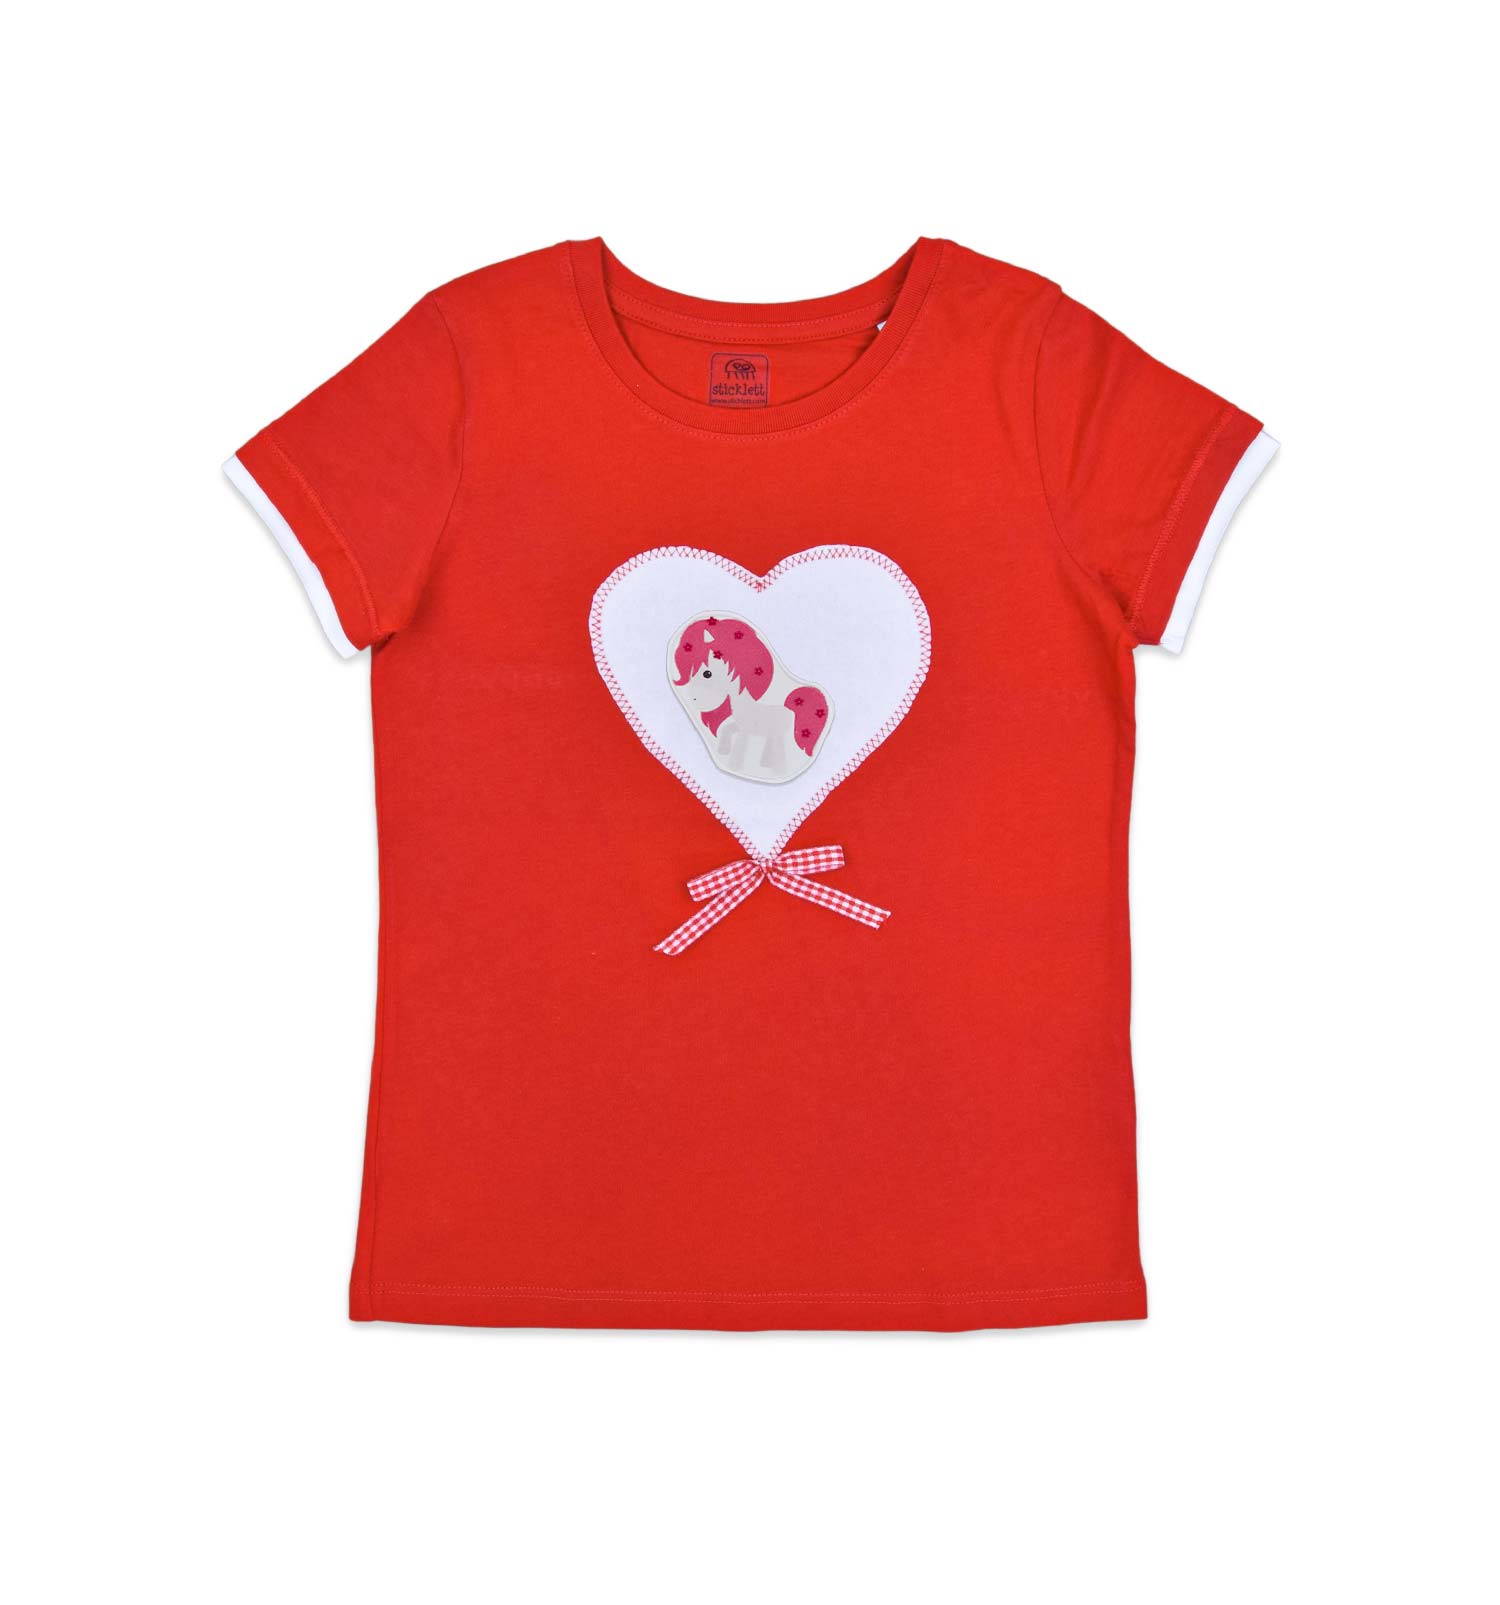 Mädchen T-Shirt mit Herz in rot | sticklett Online Store.